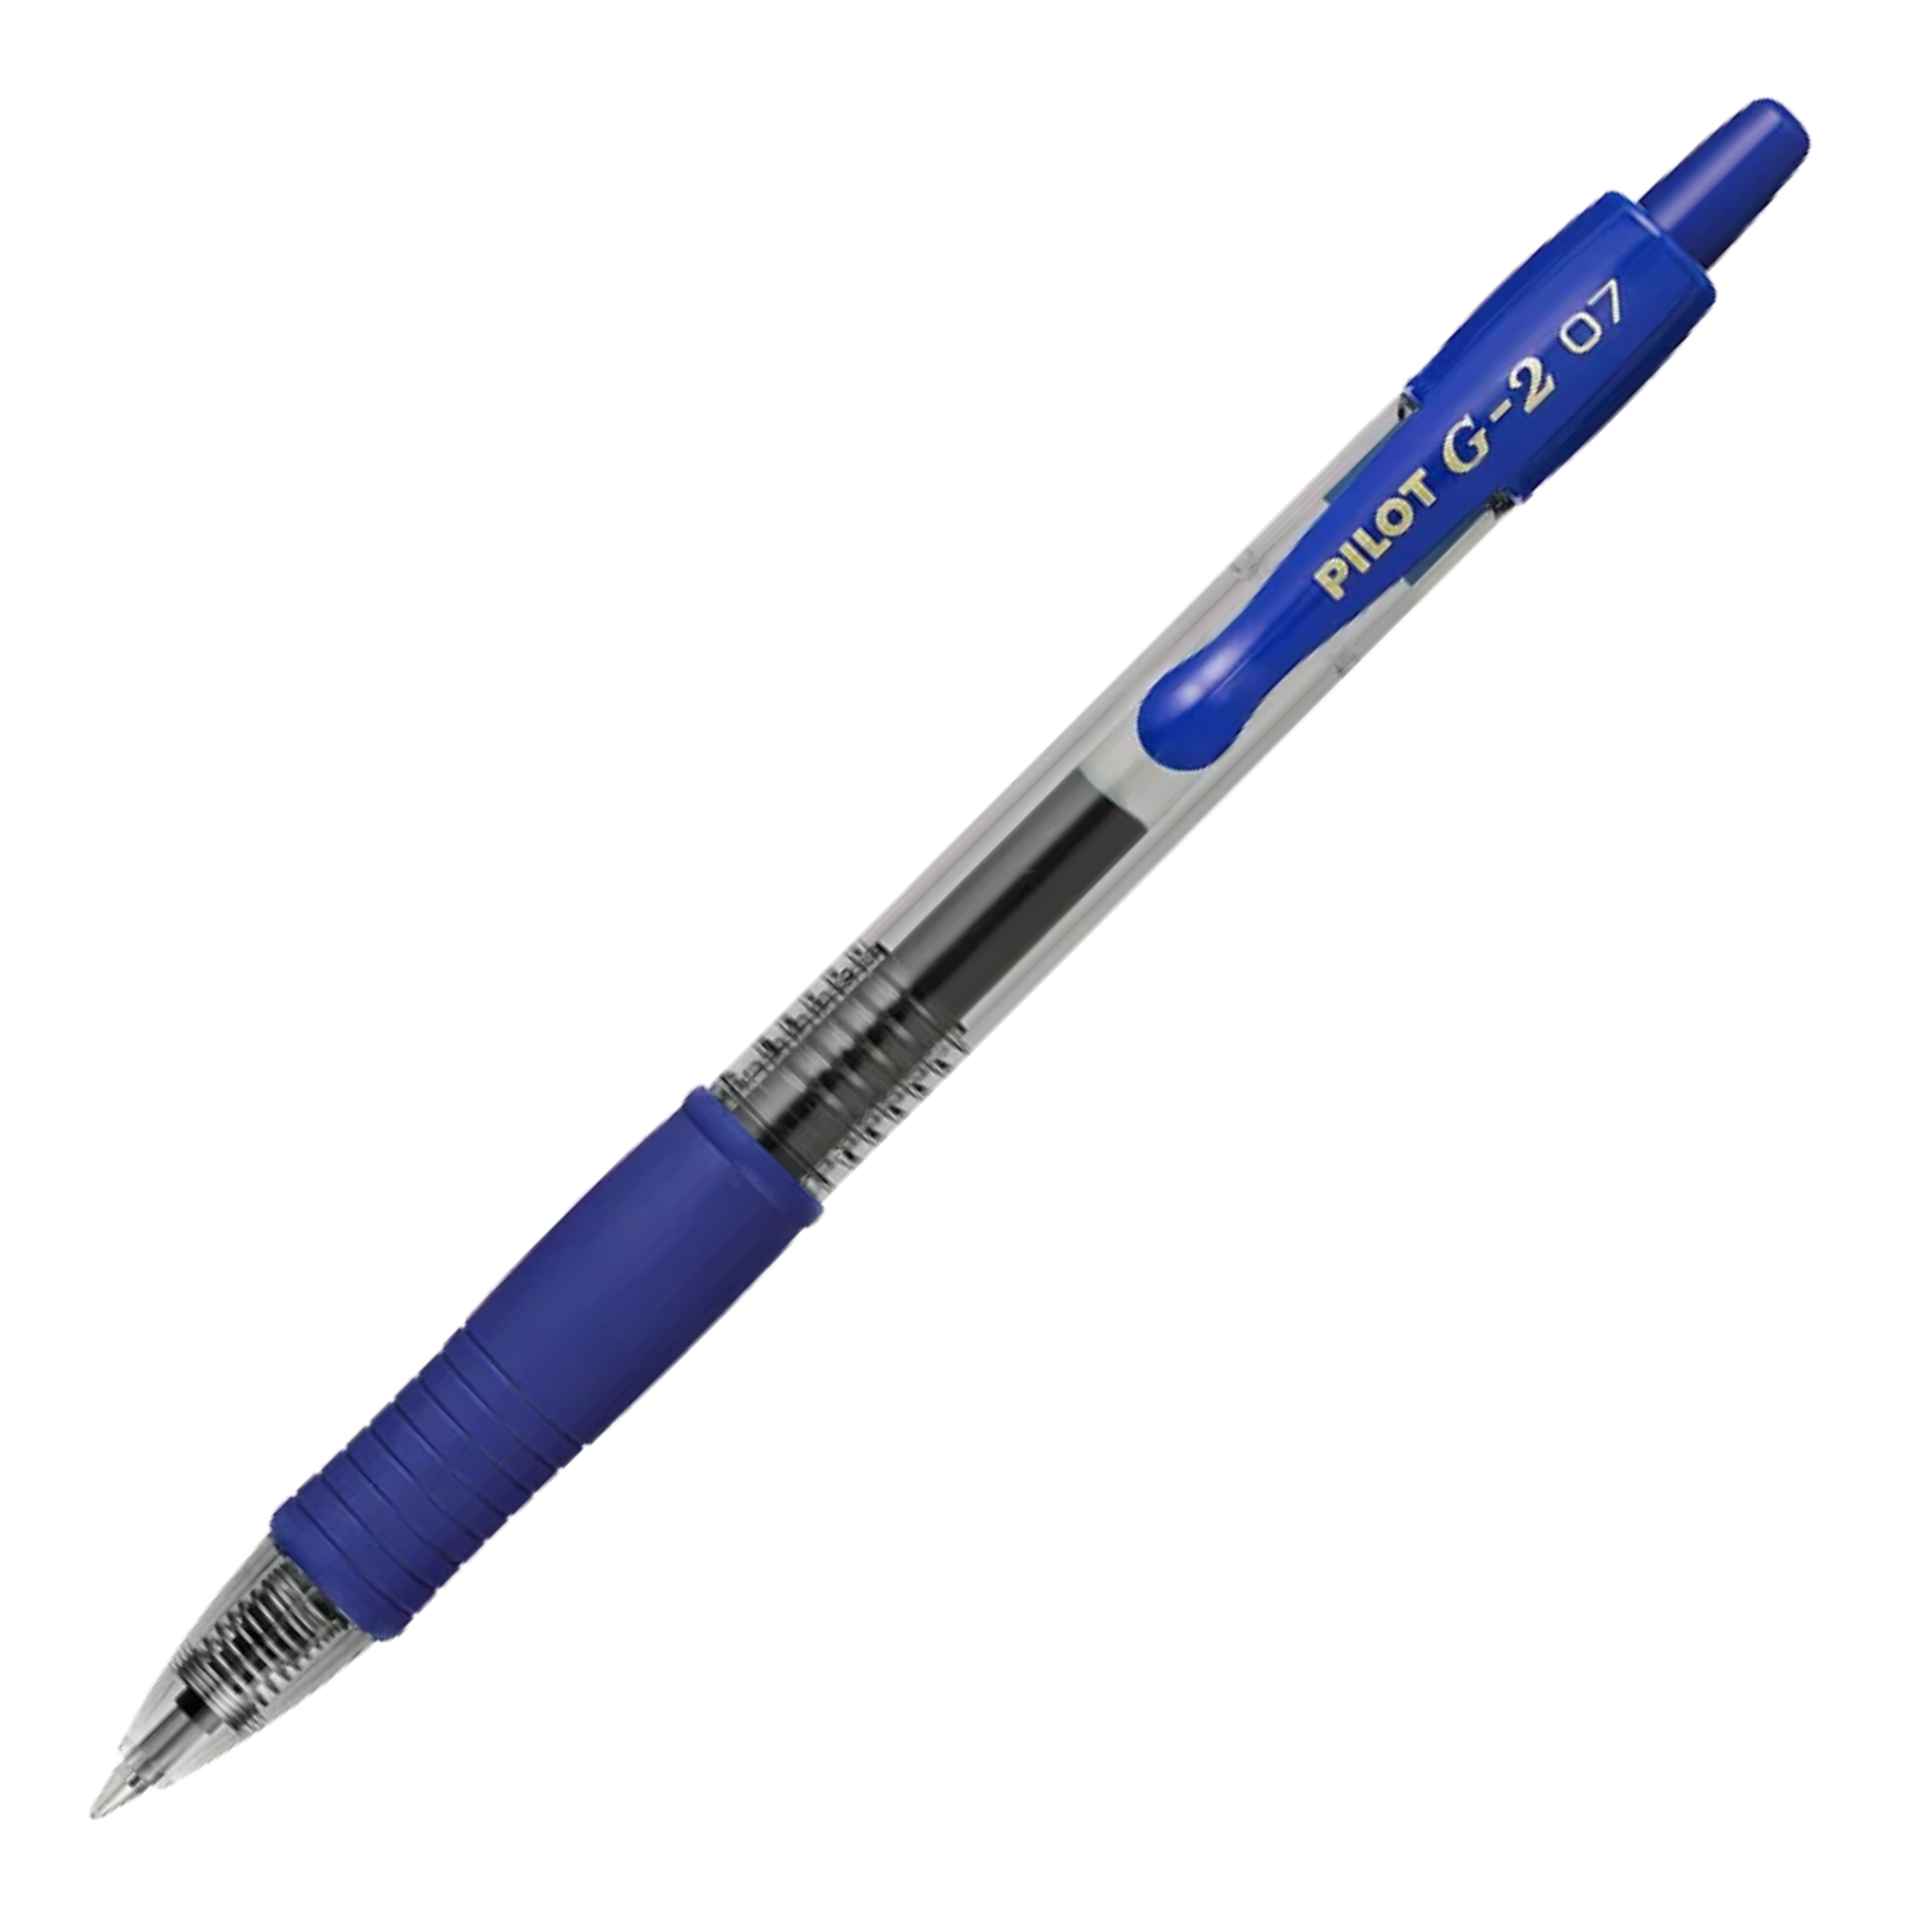 Pilot G2 0.7 Gel Pen Blue